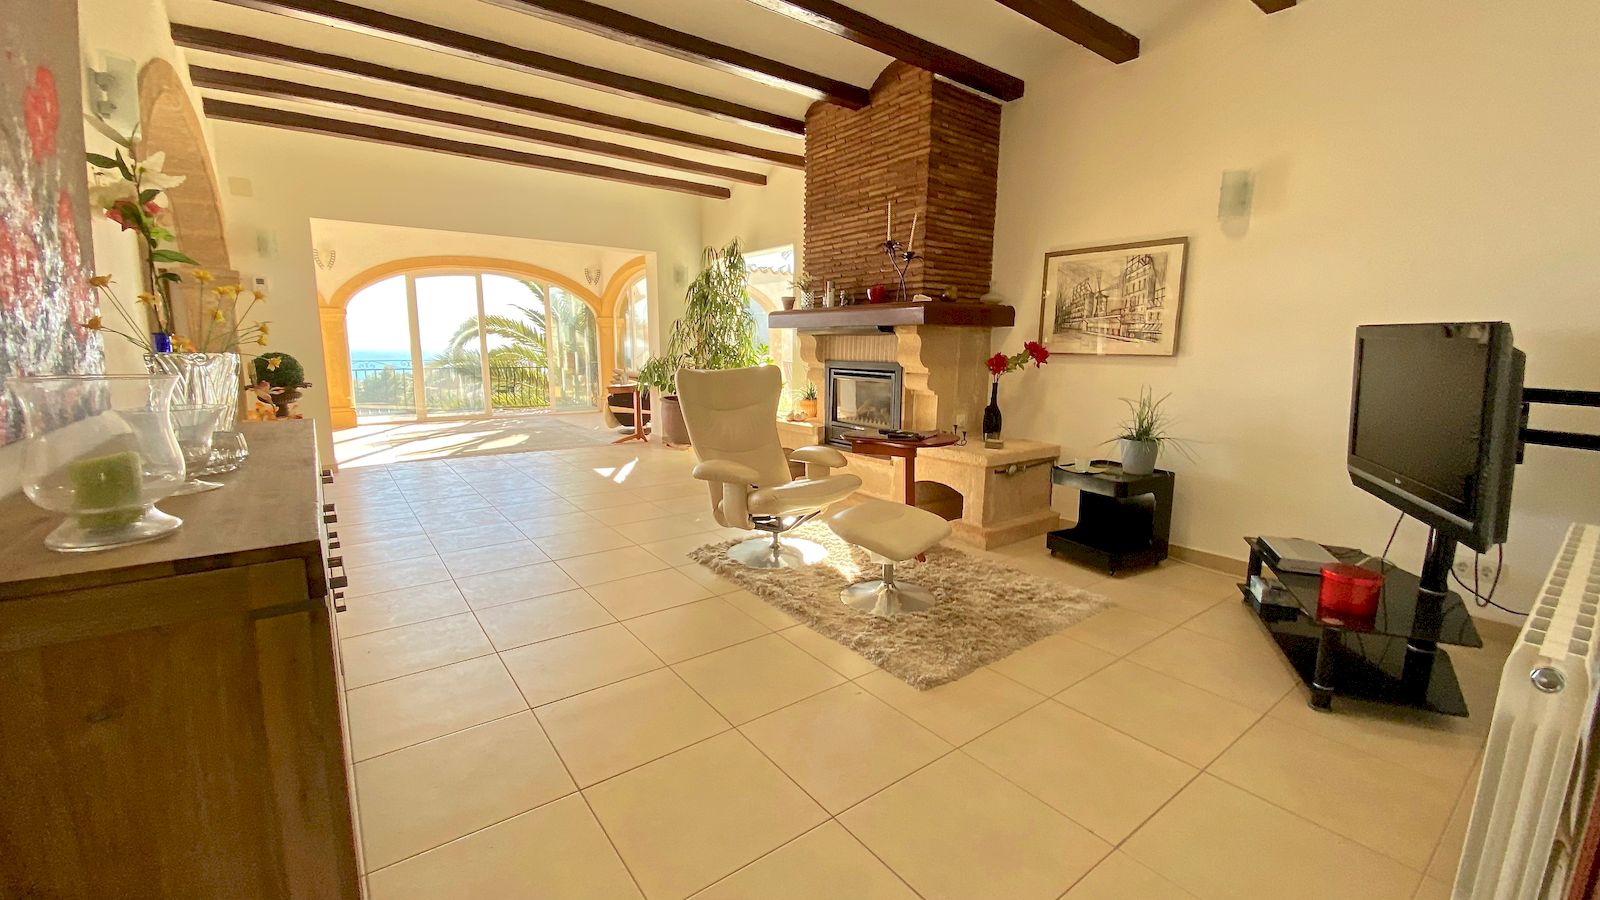 Investitionsmöglichkeit - Villa zum Verkauf mit Meerblick - Costa Nova Ambolo